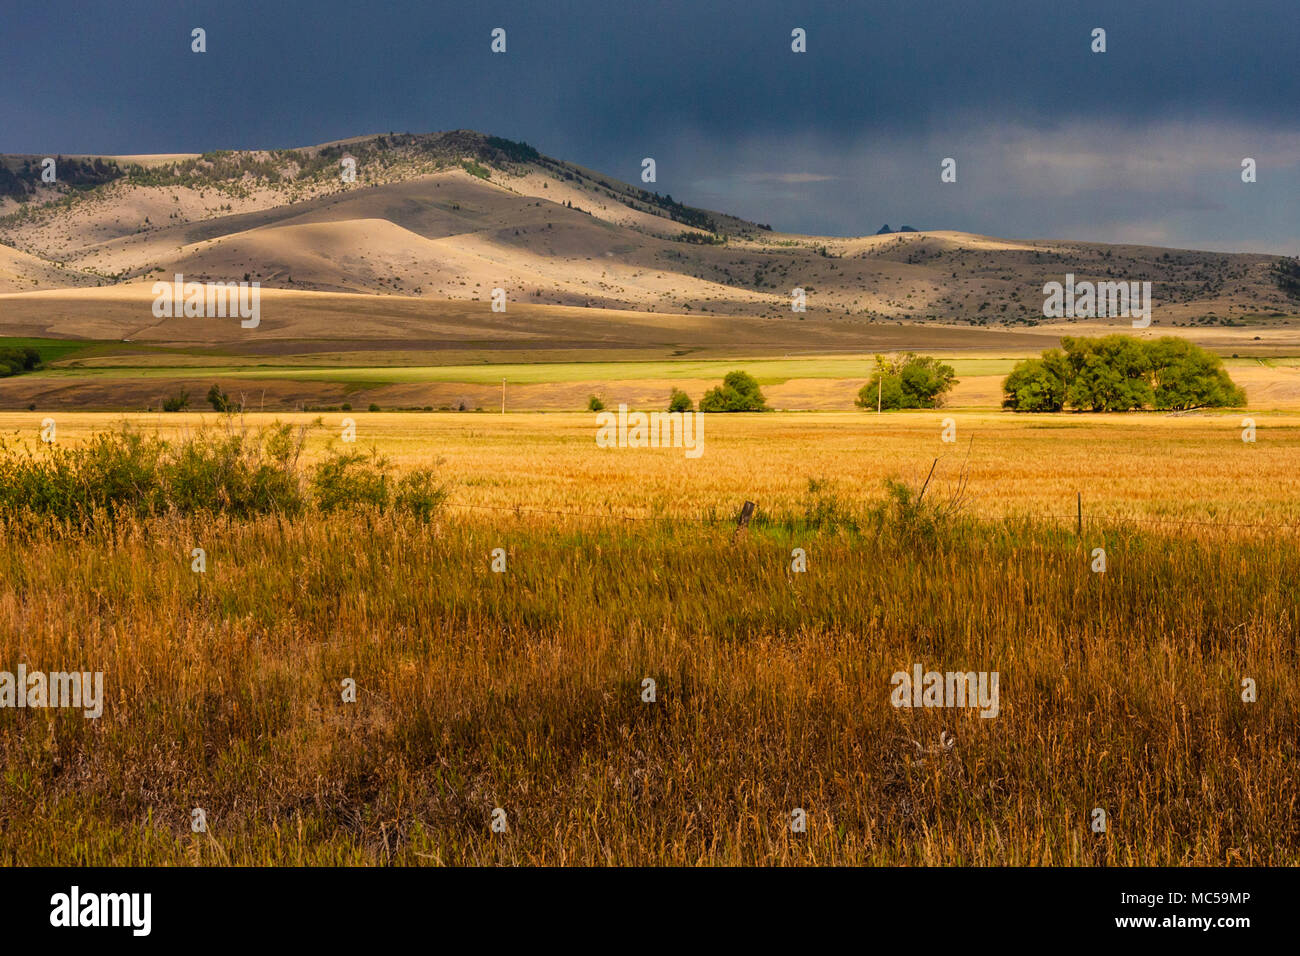 Luce prima di una tempesta sulle fattorie del Montana sudoccidentale con la catena montuosa della Gallatina e la foresta nazionale in lontananza. Grano e allevamento di fieno Foto Stock